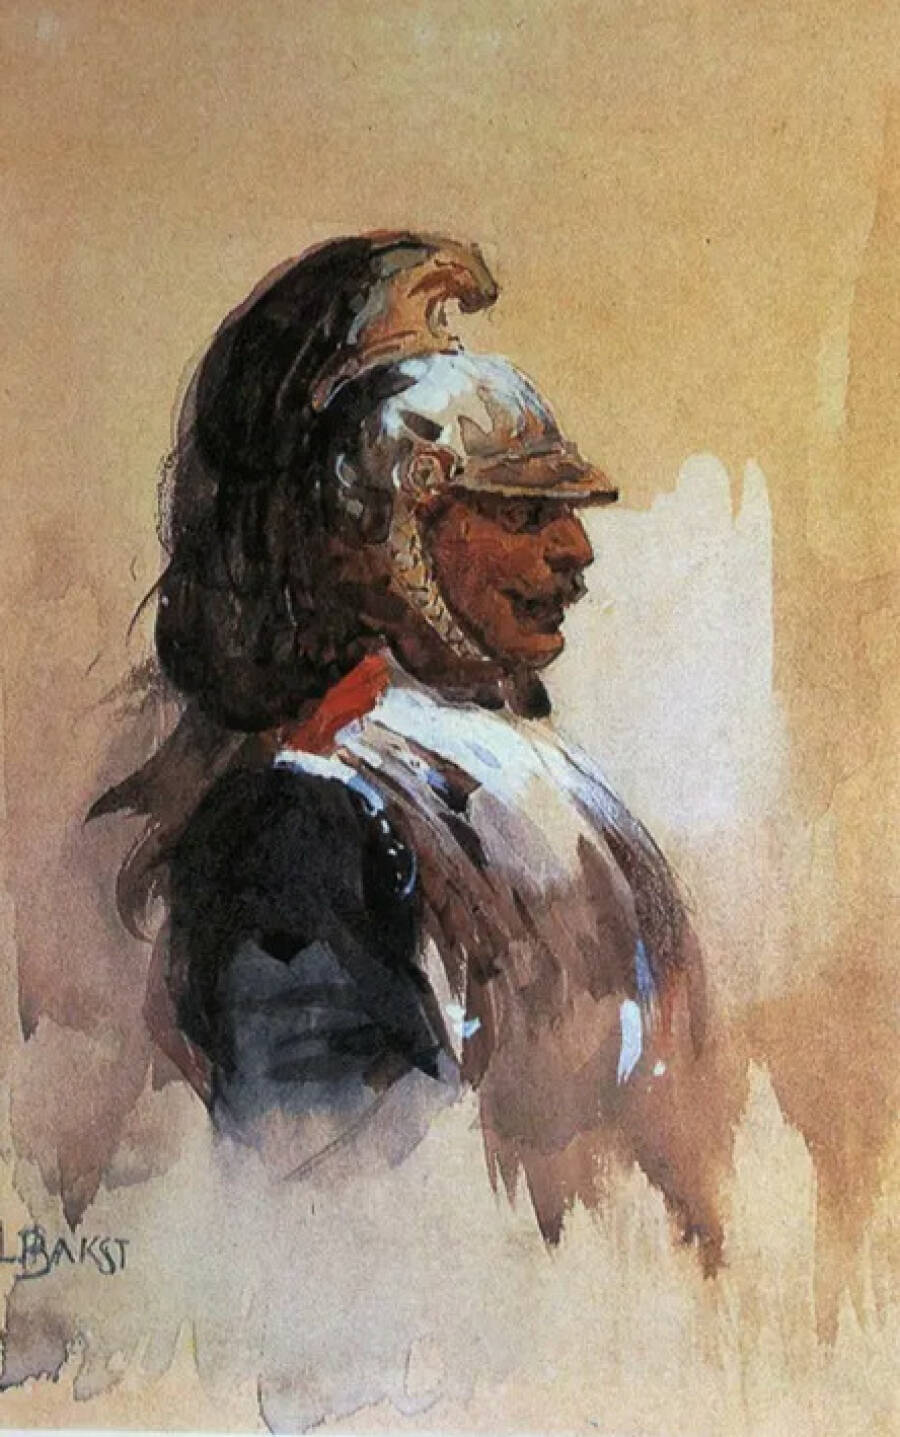  Картина «Военный». 1890 год. Государственная Третьяковская галерея.